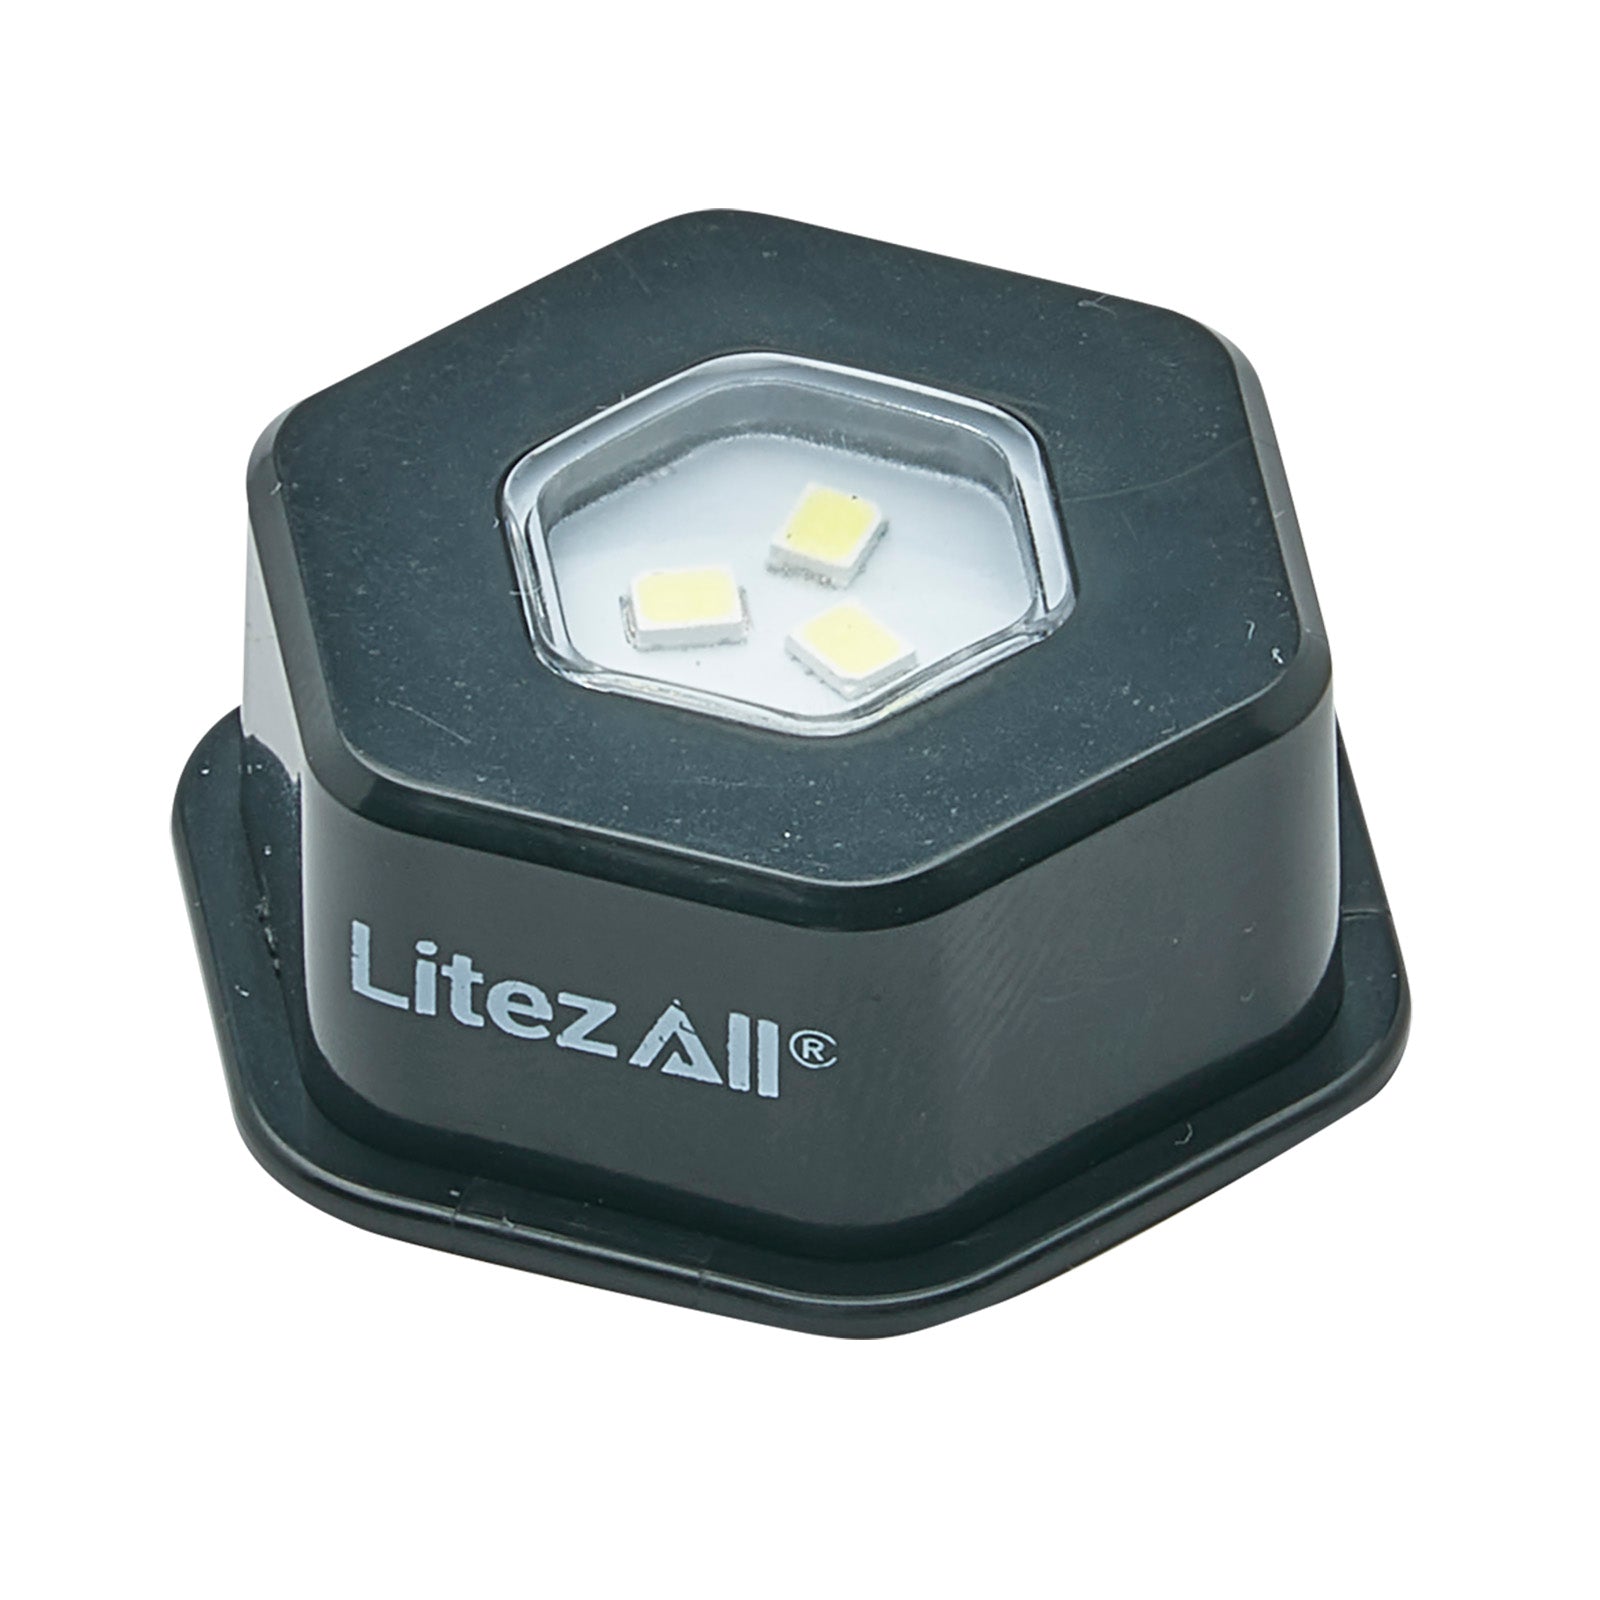 LitezAll Battery Powered Hexagon Puck Lights 4 Pack